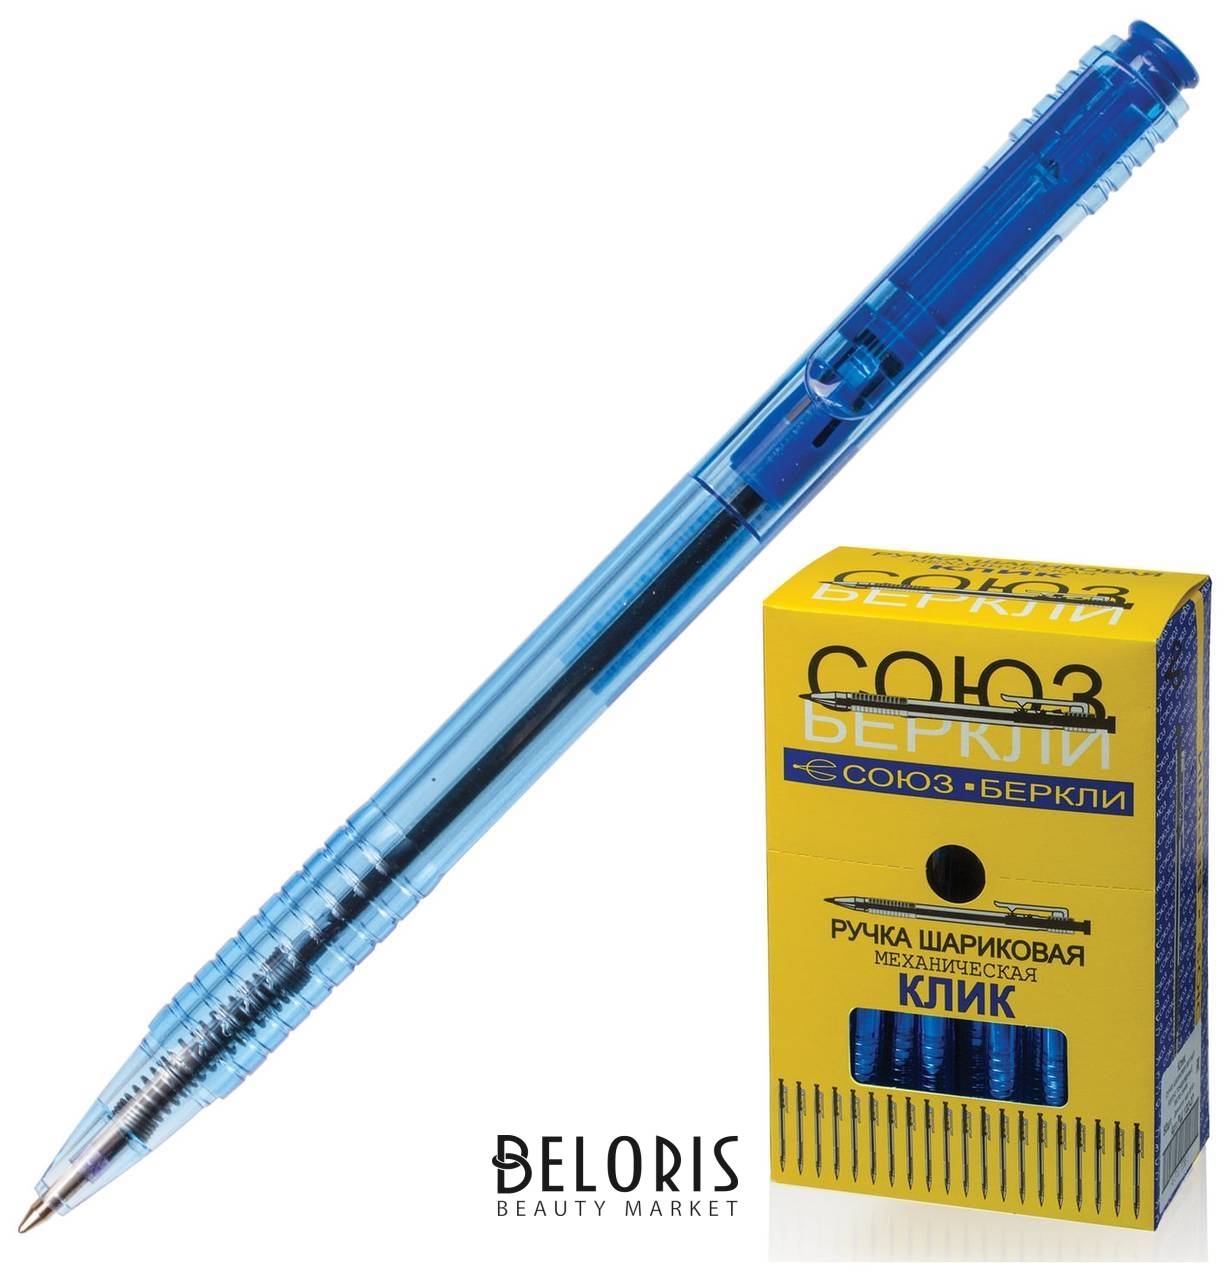 Ручка шариковая автоматическая союз Клик, синяя, корпус тонированный синий, 0,7 мм, линия письма 0,35 мм, РШ 132-07 Союз